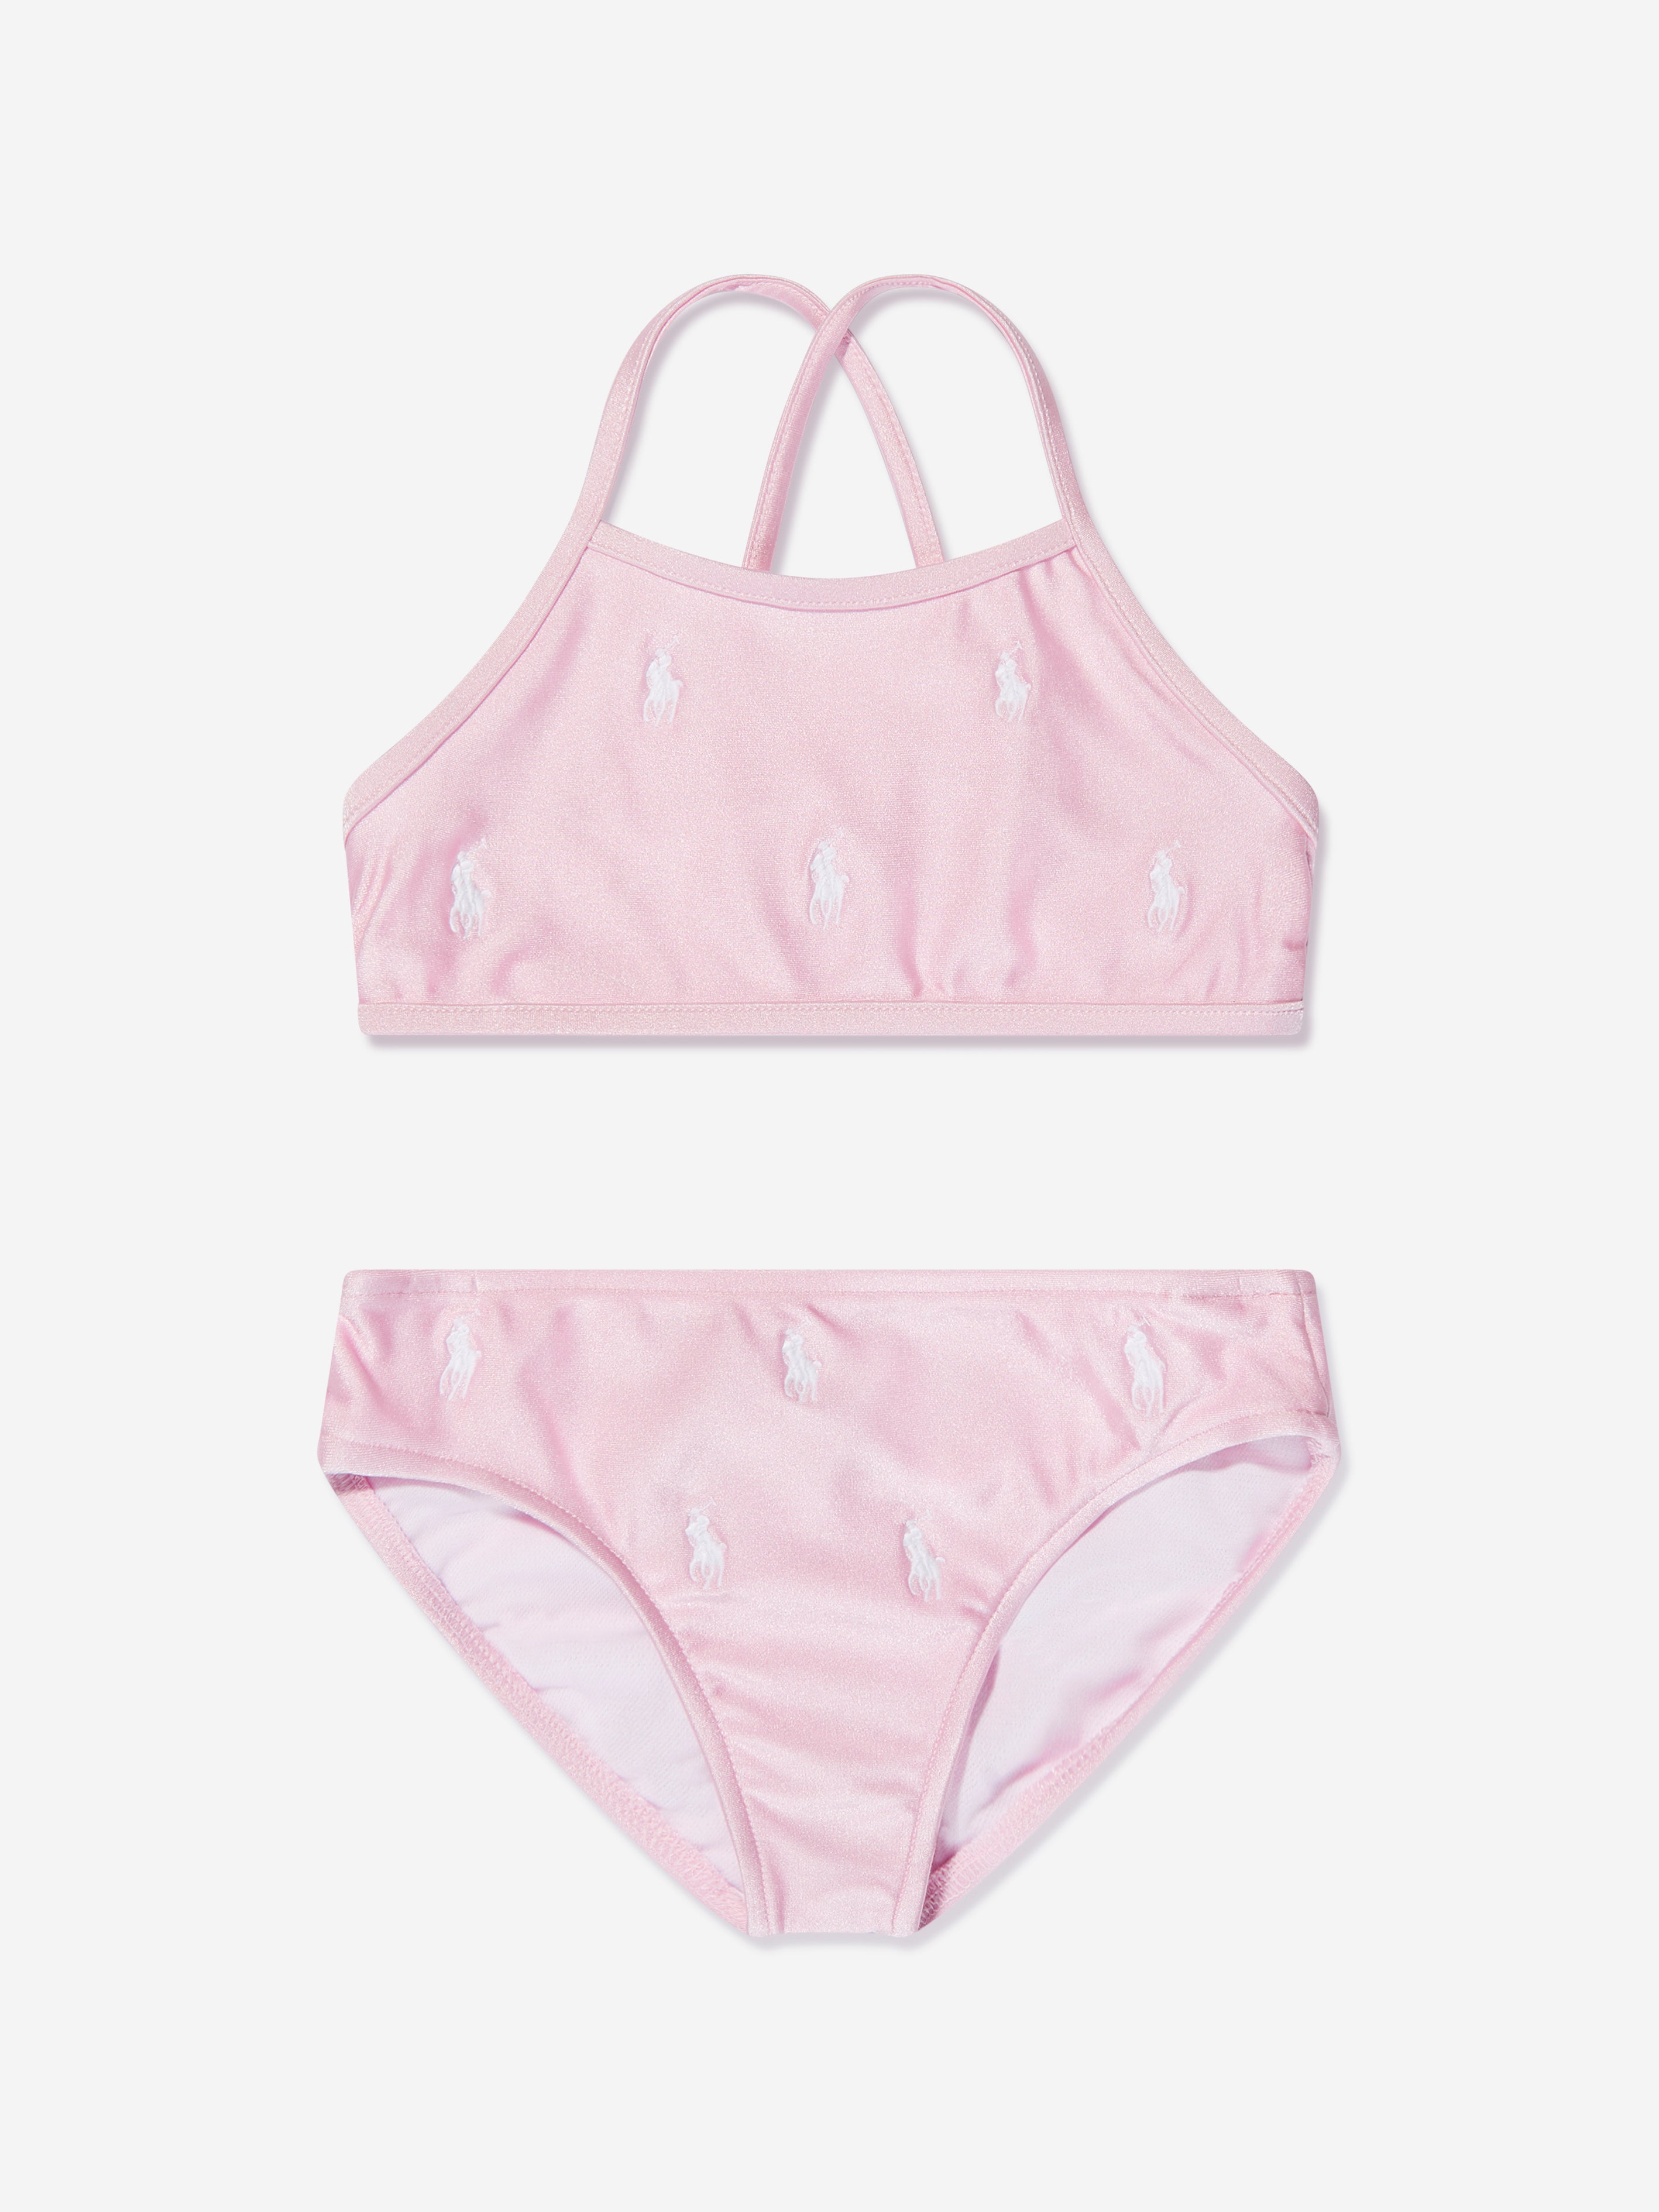 3-9Yrs Girls Swimming Pants Pink Panties Kids Swimsuit Baby Girl